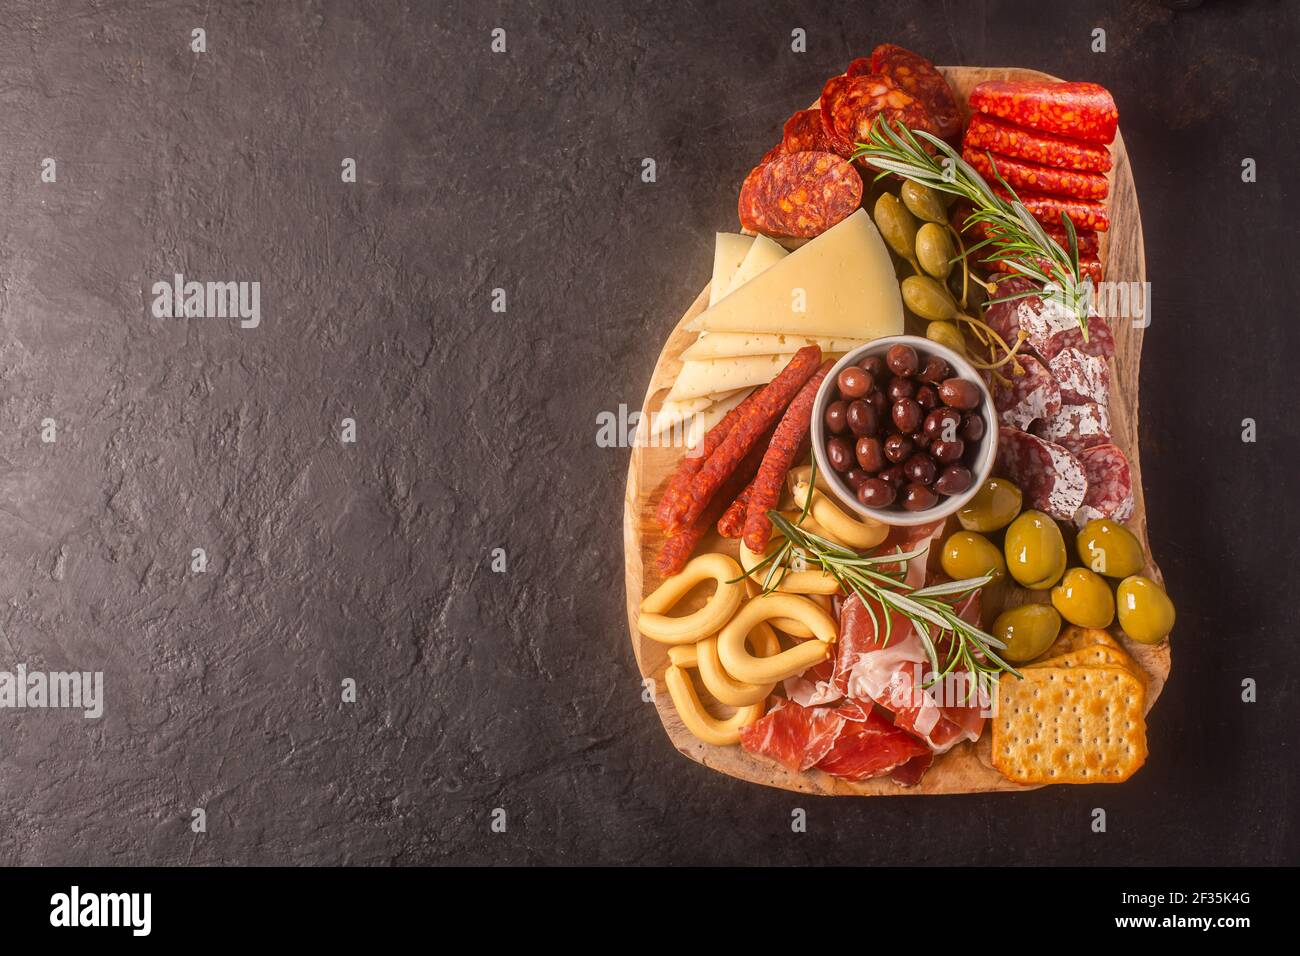 Salumi con jamon spagnolo, salsiccia di maiale con pepe, fuet, formaggio e frutti di bosco su sfondo scuro, vista dall'alto con spazio per la copia Foto Stock